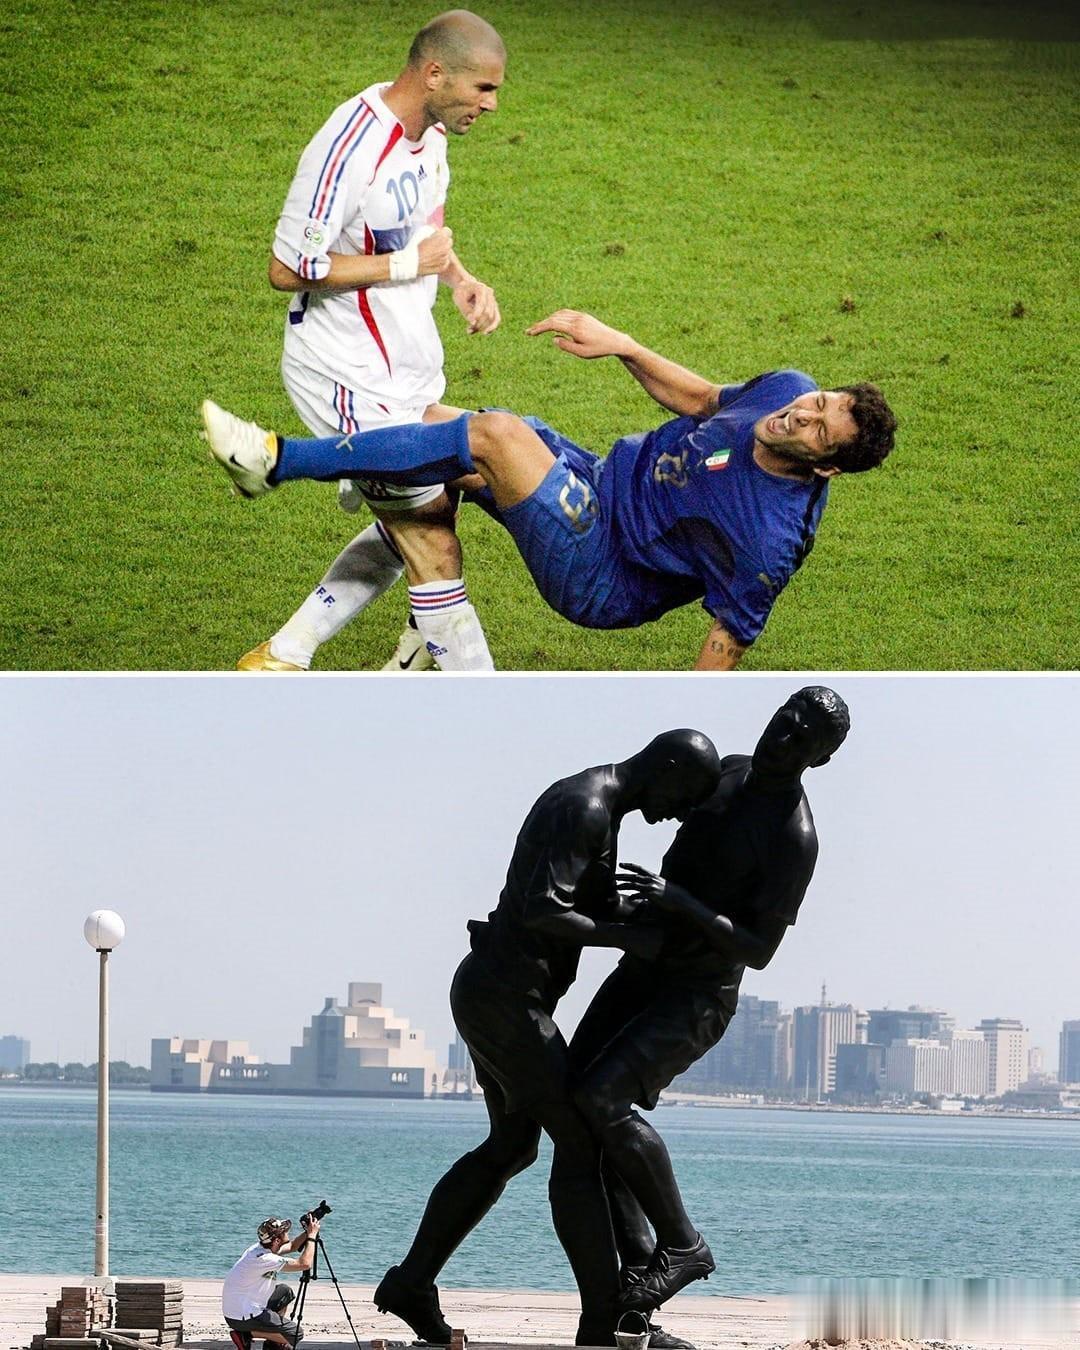 17年前的今天，齐达内在世界杯决赛中对马特拉齐发起了头槌攻击！
这是如此具有象征